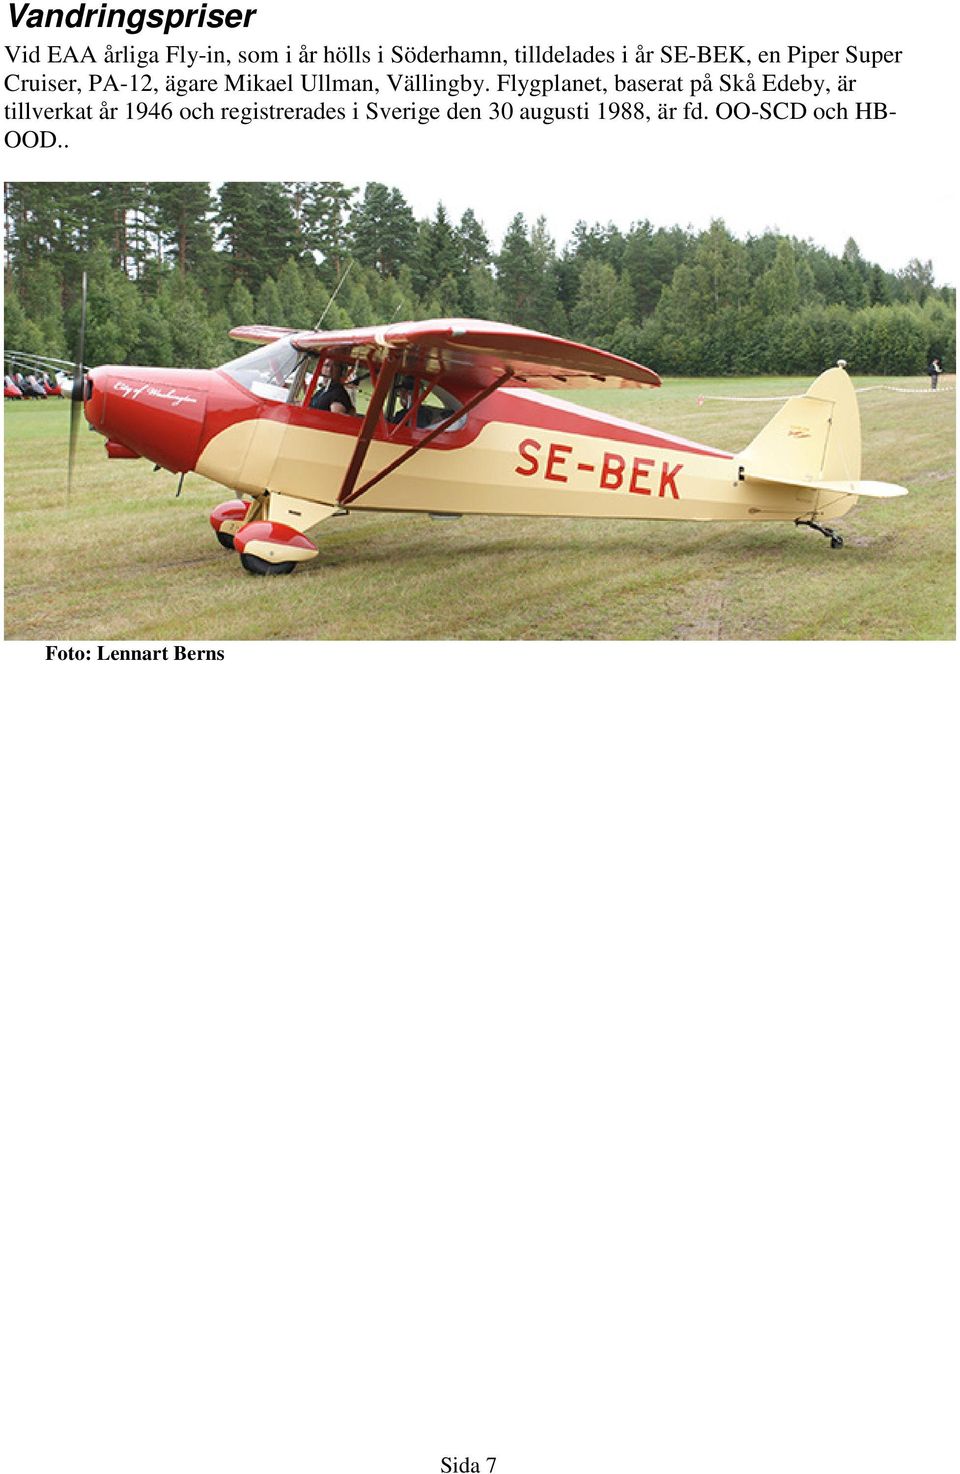 Flygplanet, baserat på Skå Edeby, är tillverkat år 1946 och registrerades i